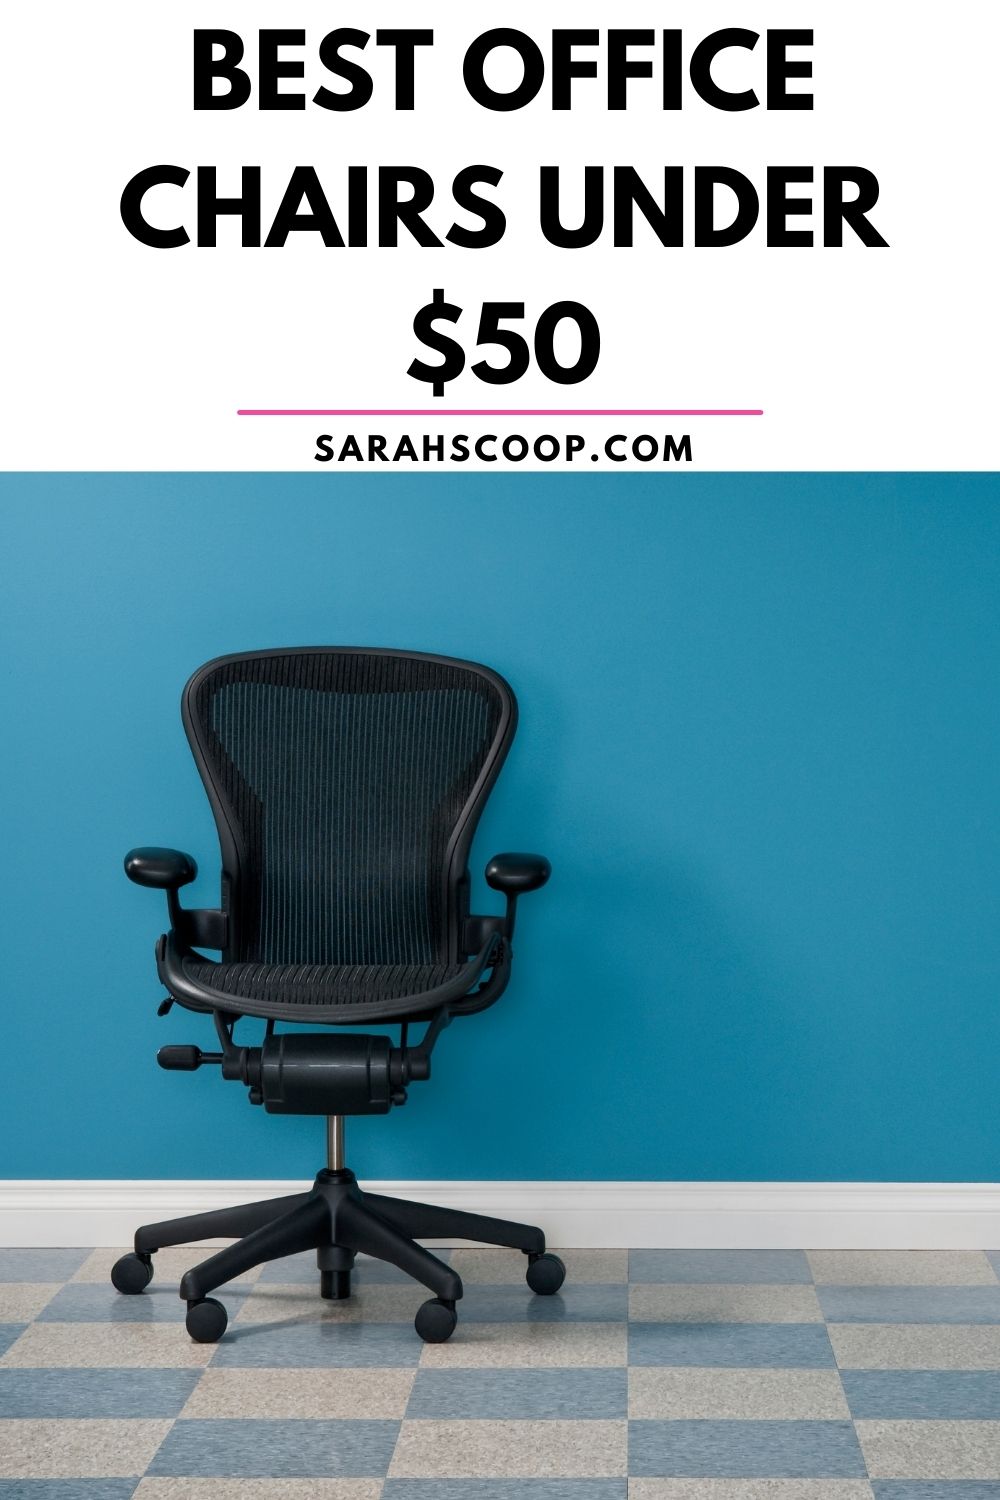 25 Best Office Chairs Under $50